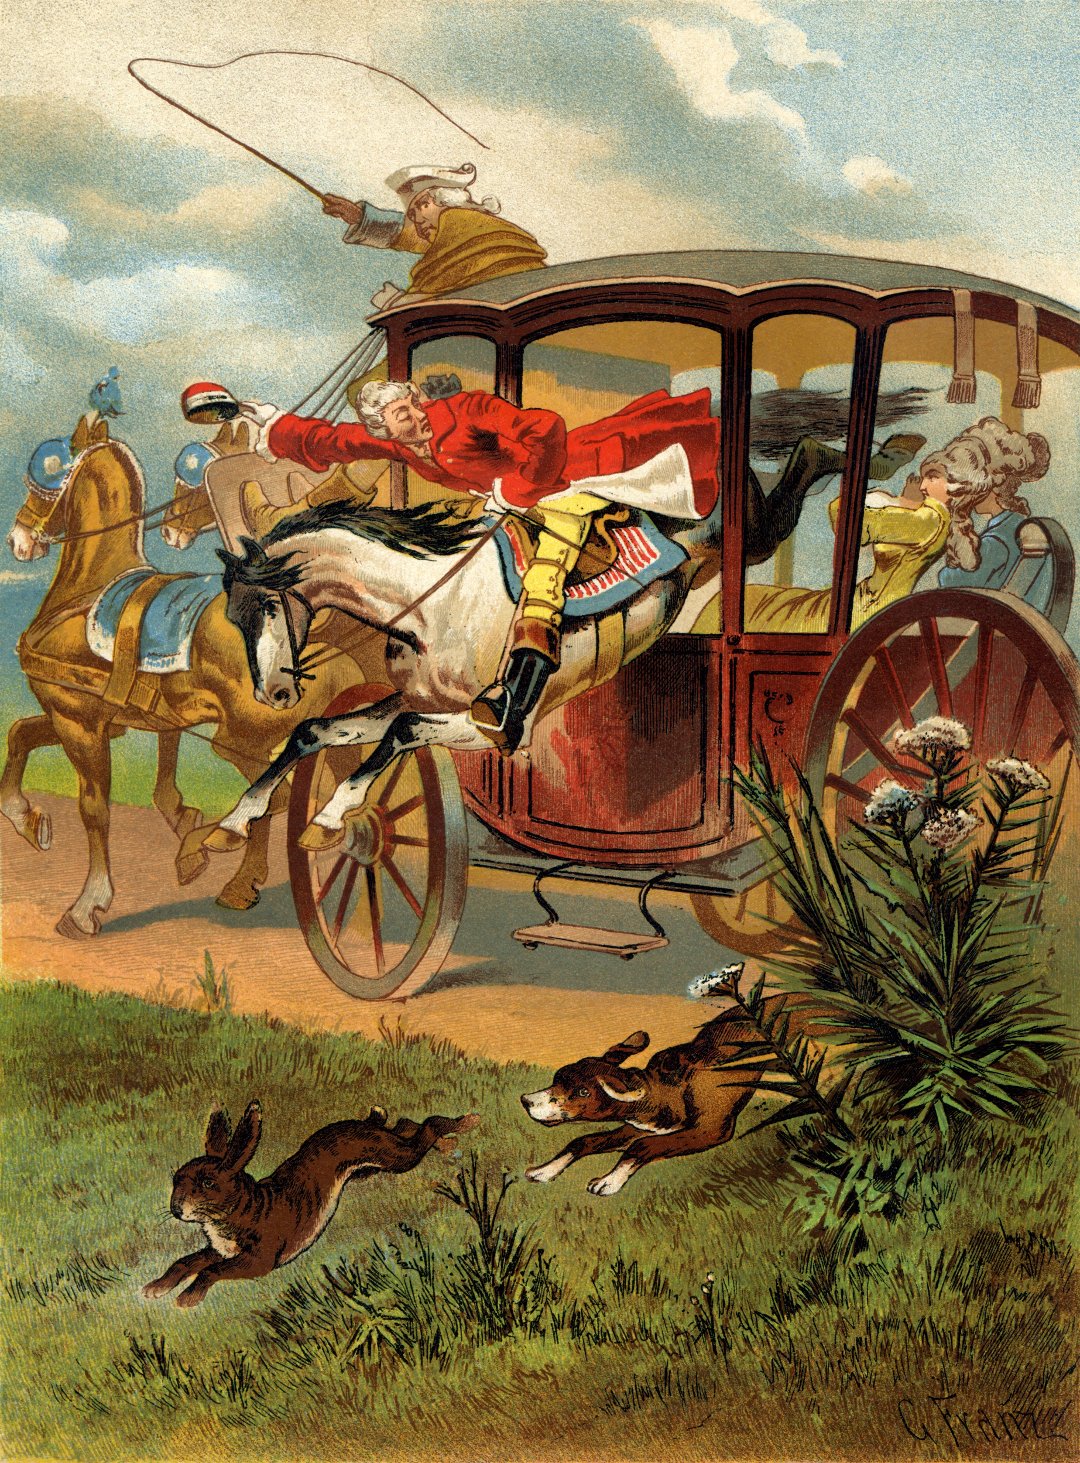 Иллюстрация с Мюнхгаузеном на коне, пролетающем через окна кареты, к книге Рудольфа Эриха Распе, созданная Готфридом Францем